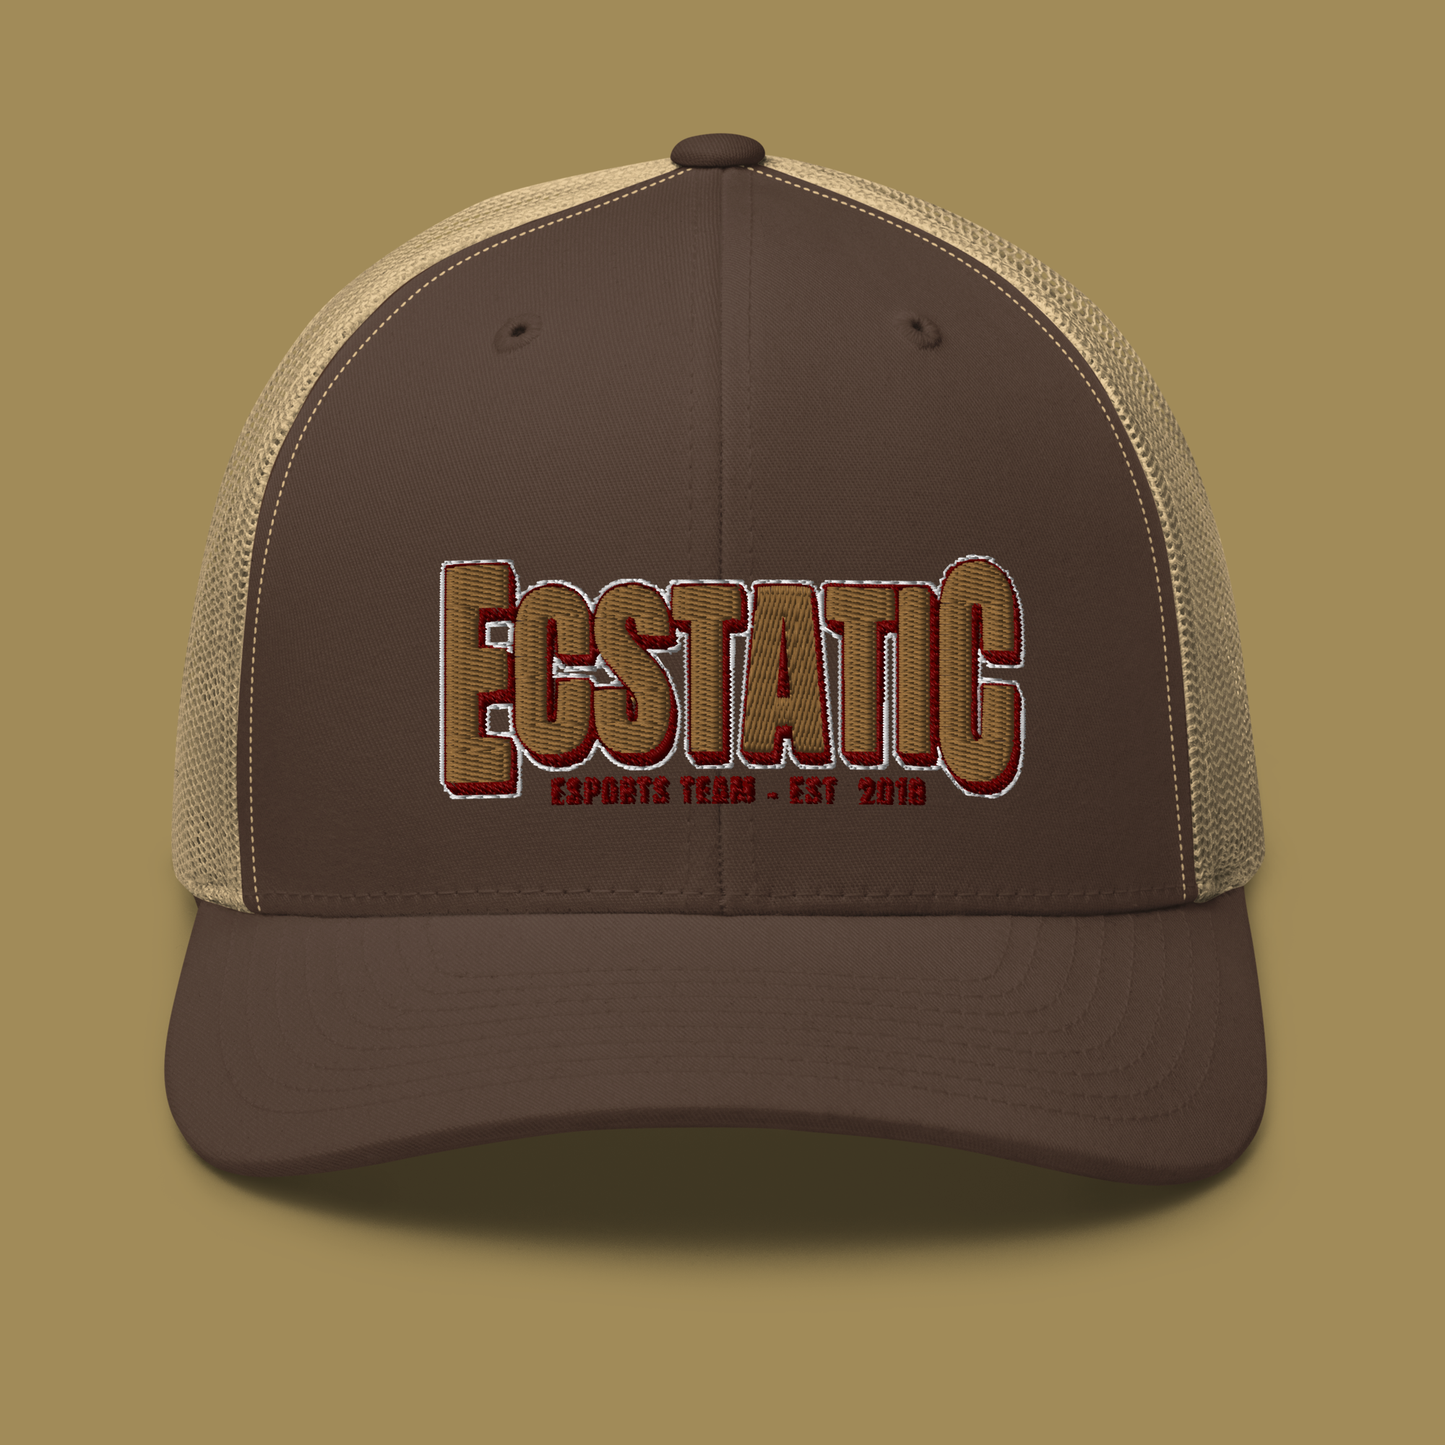 ECSTATIC Retro Trucker Cap - Brown/Khaki